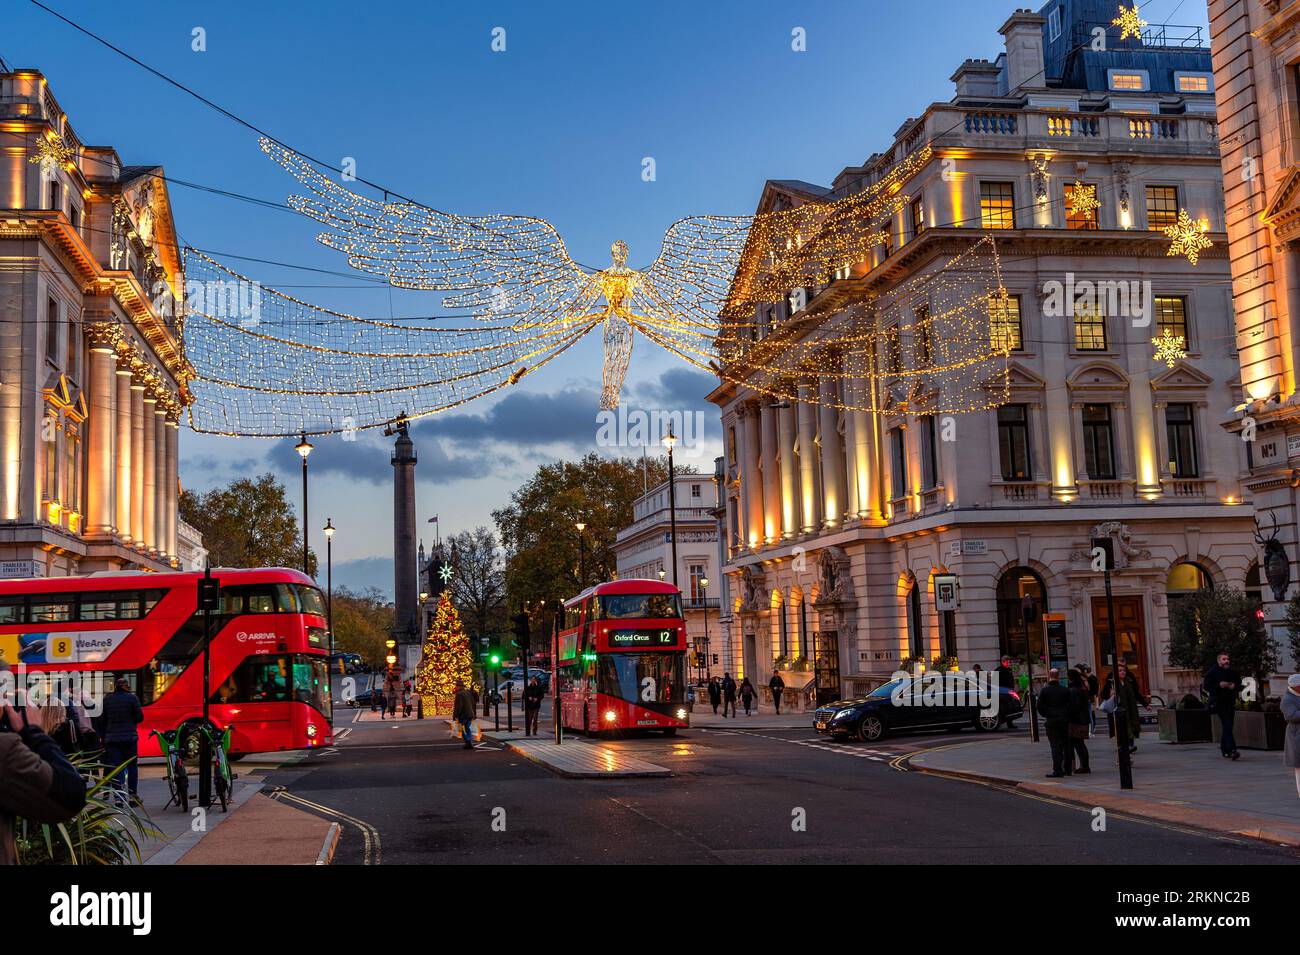 Londra, Inghilterra, Regno Unito - 23 novembre 2022: Street view a Londra al crepuscolo, che illustra la vita cittadina nel periodo delle vacanze natalizie con luci angeliche d Foto Stock